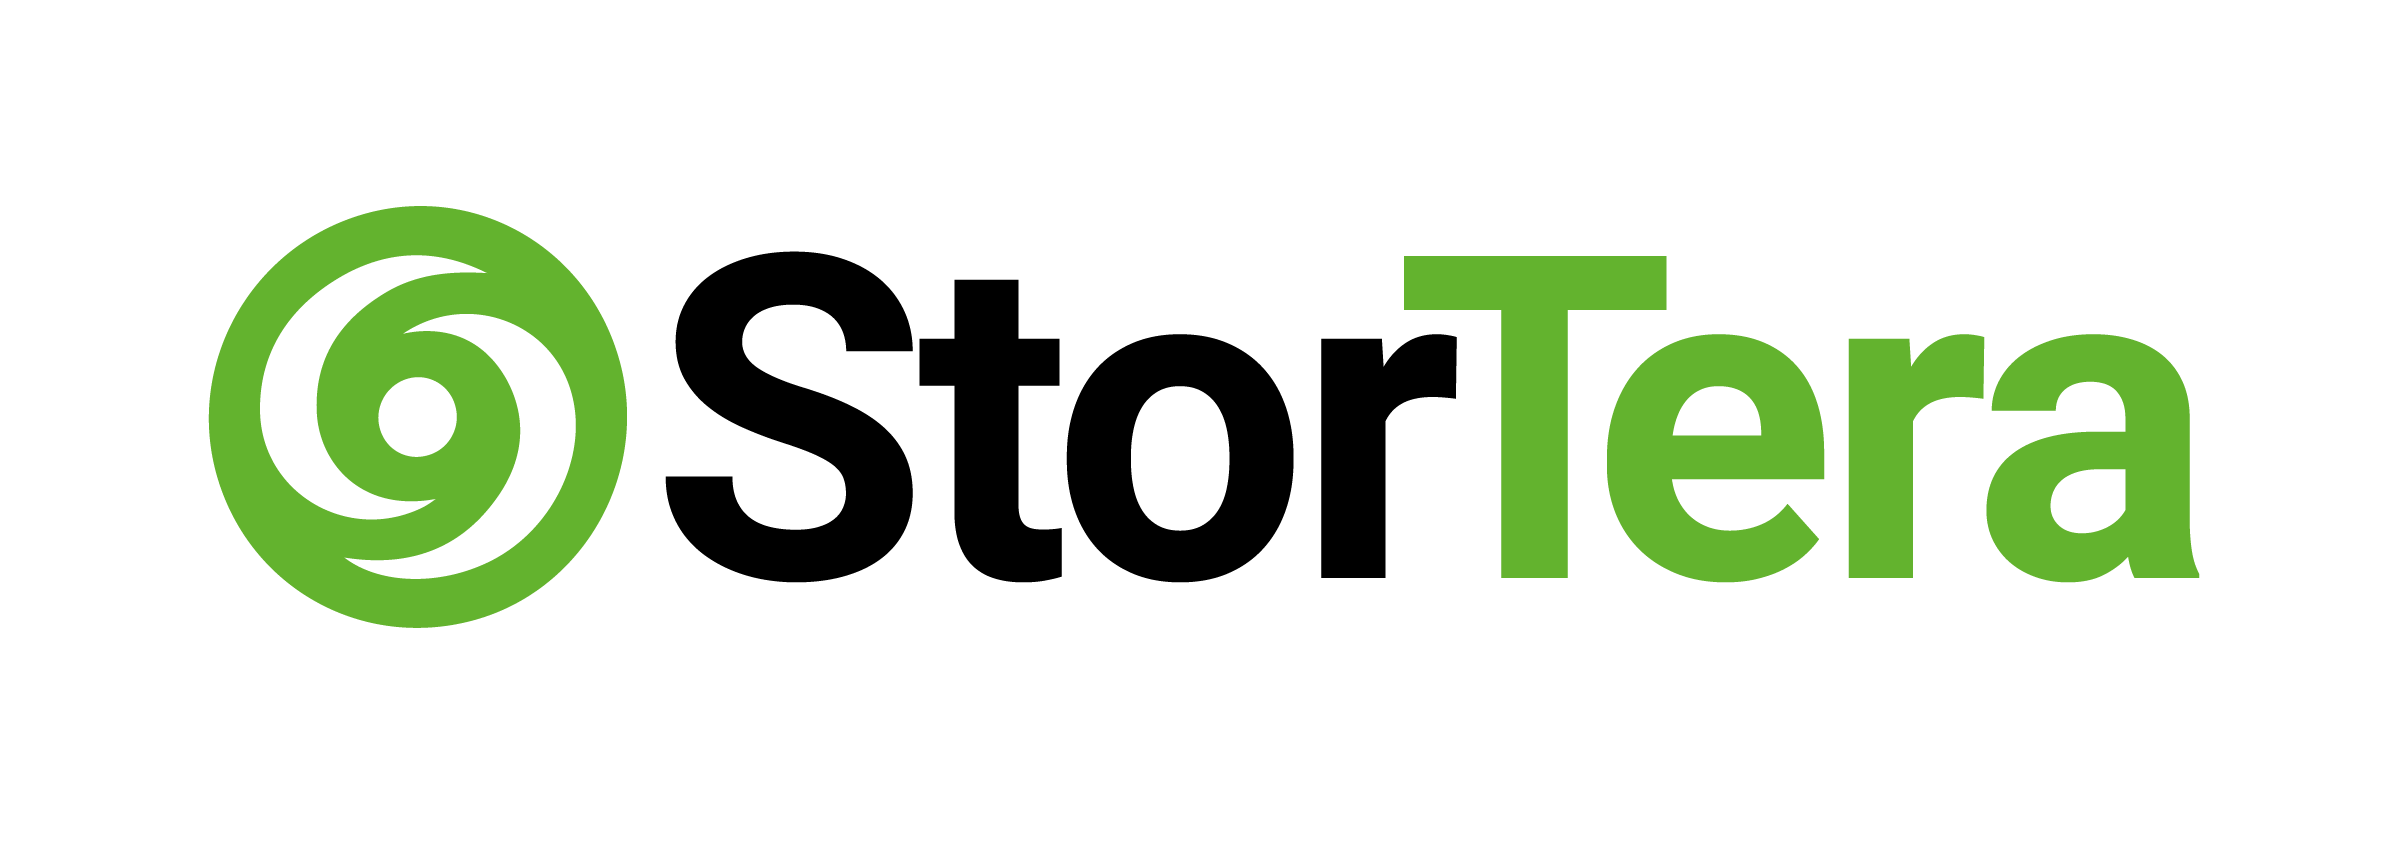 Batteries.com Logo - Home - StorTera